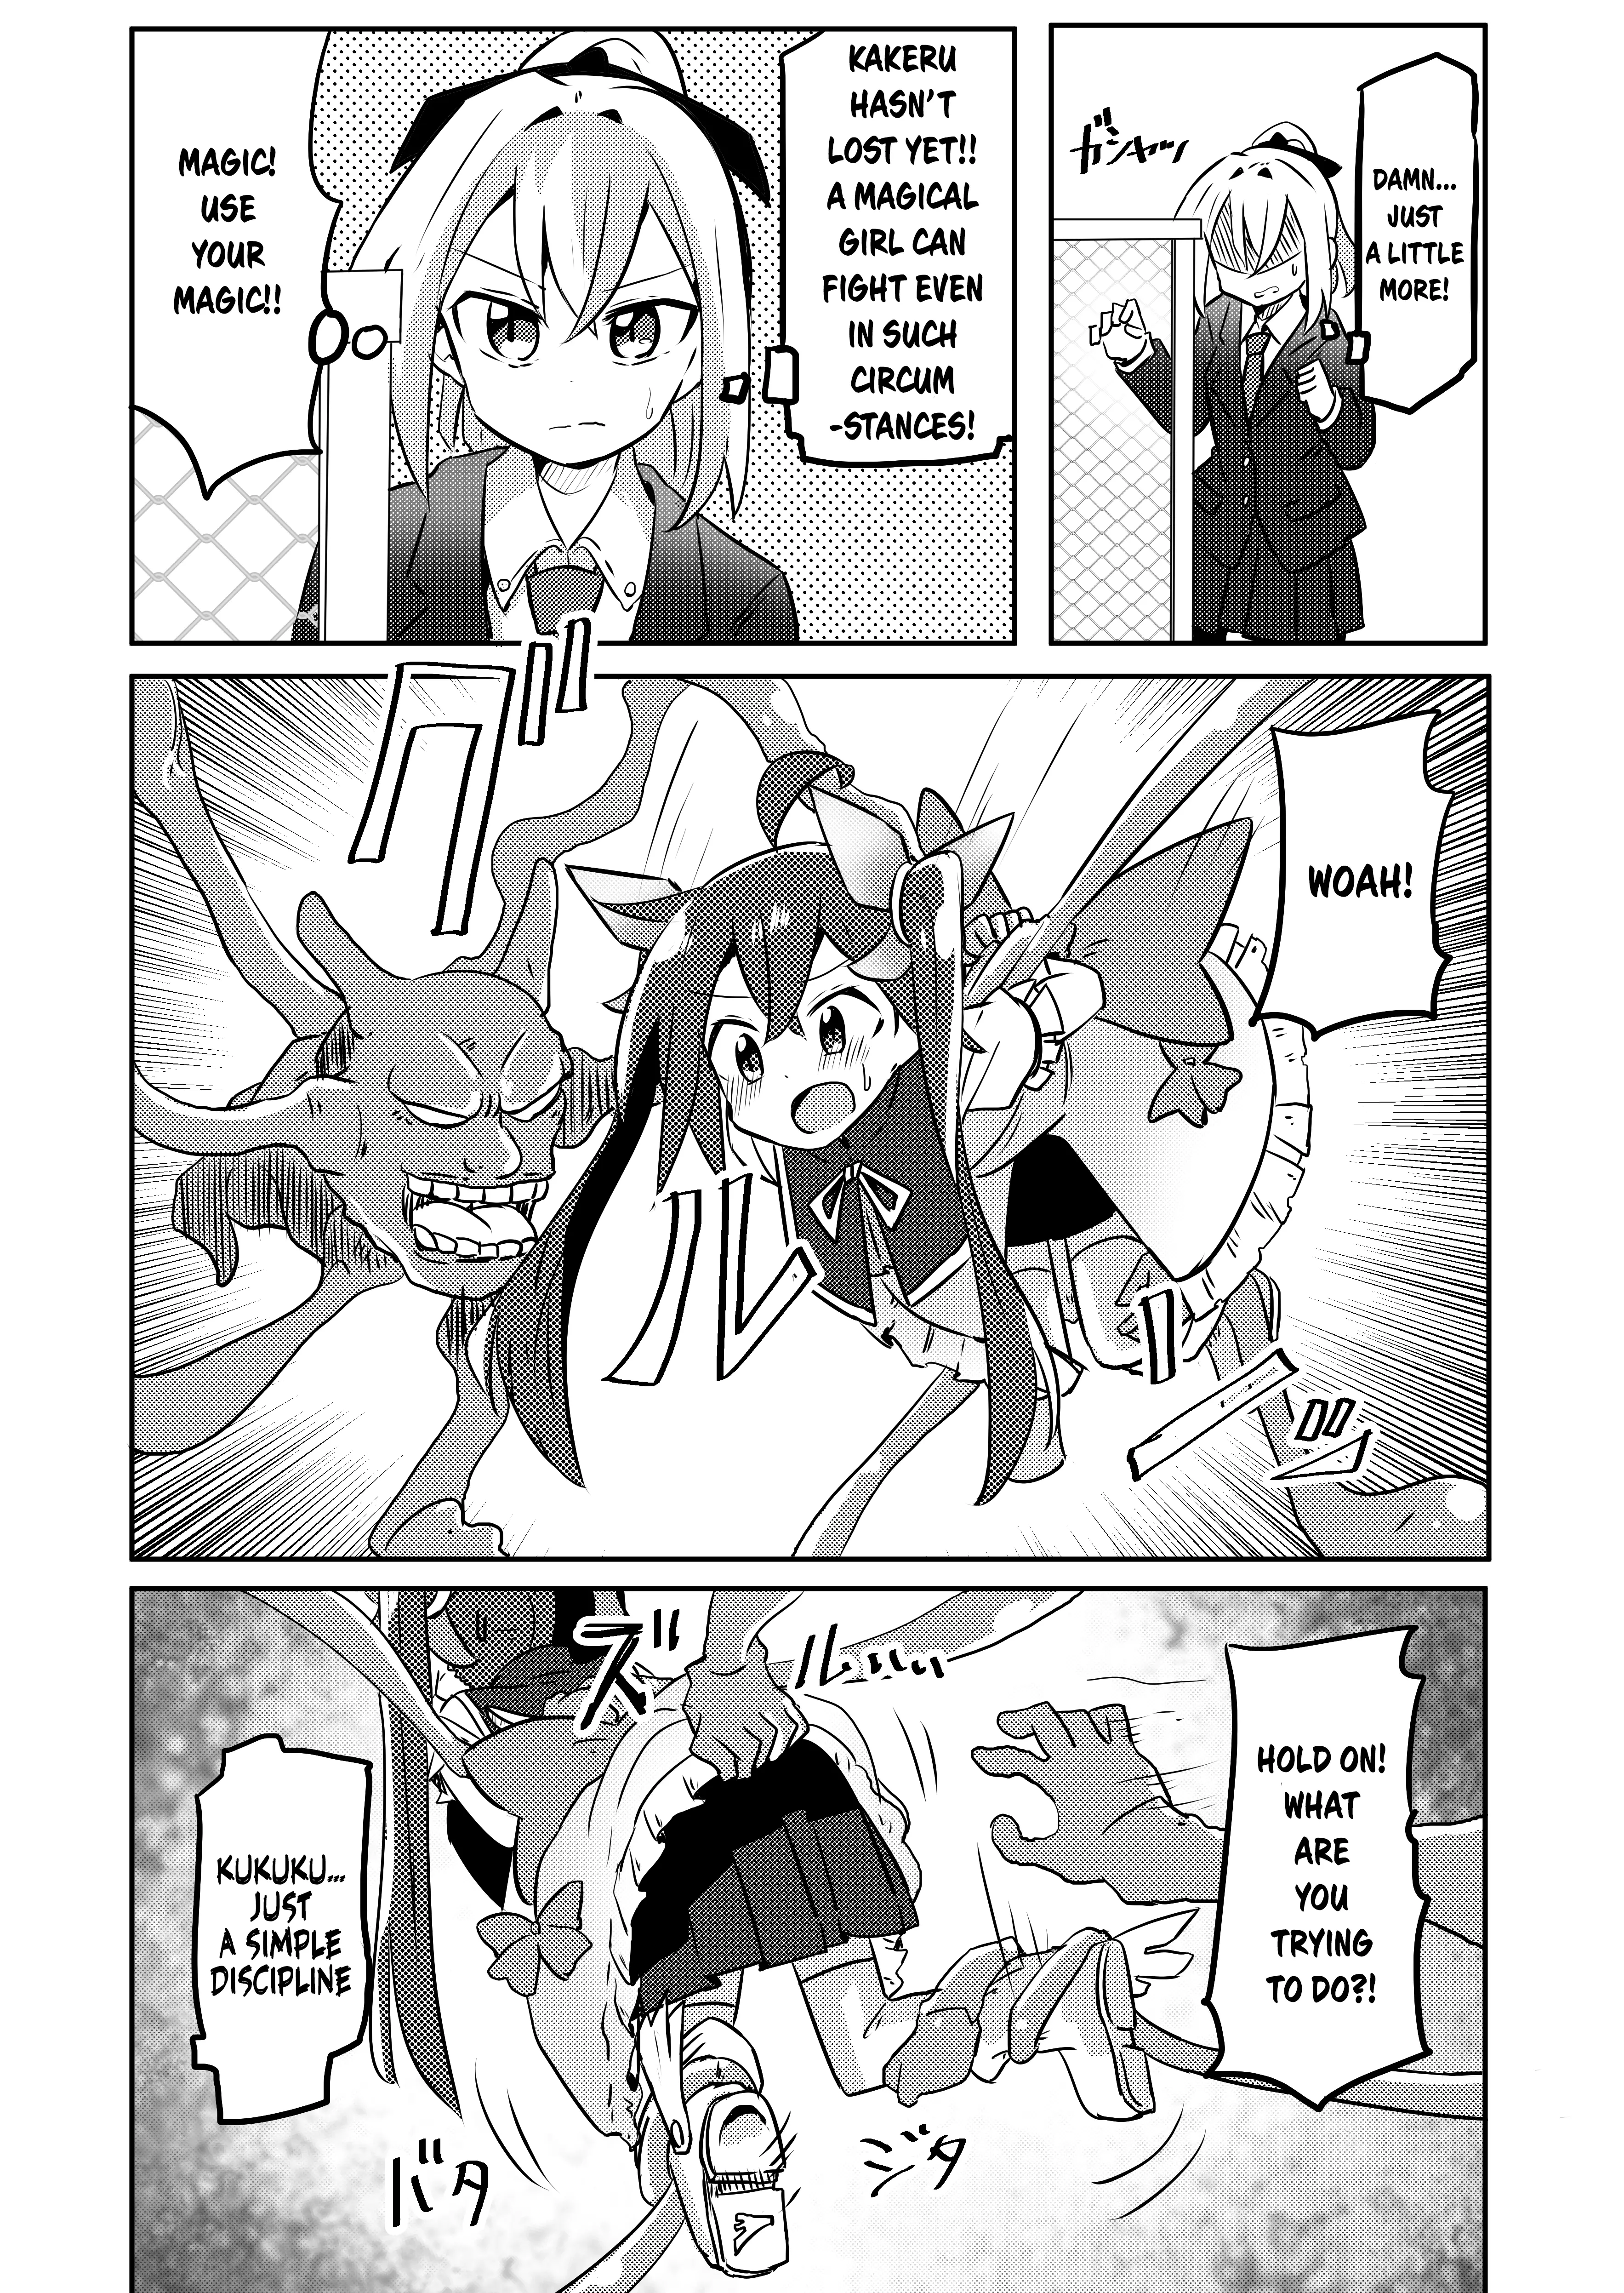 Magical Girl Kakeru - 11 page 2-60dbe7ea